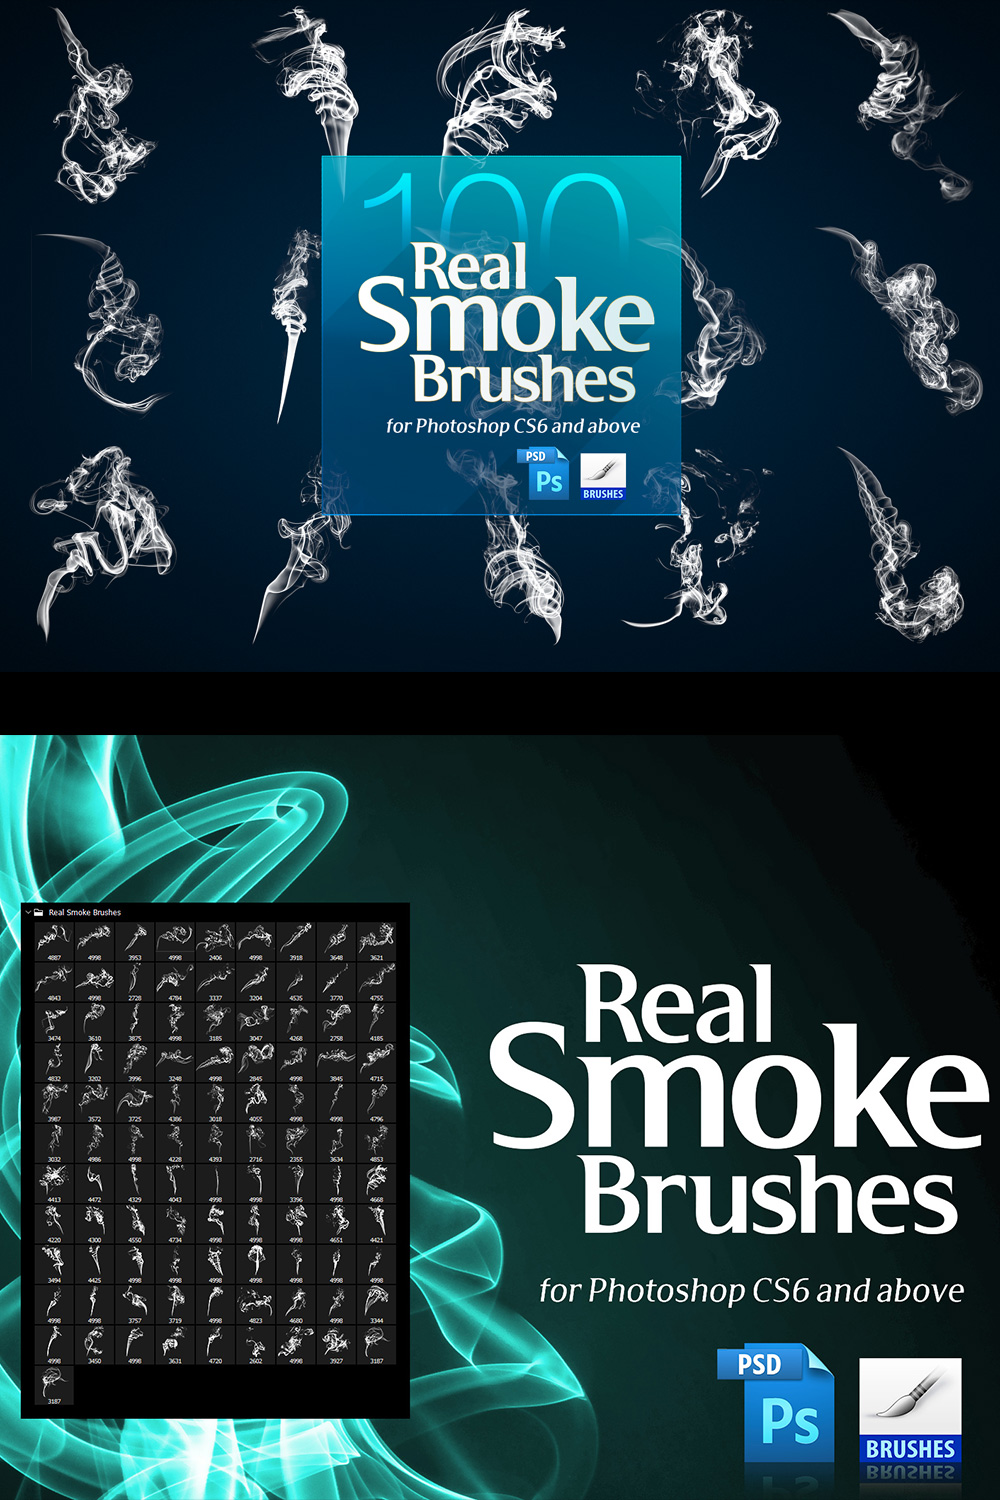 Real Smoke Brushes for Photoshop pinterest image.